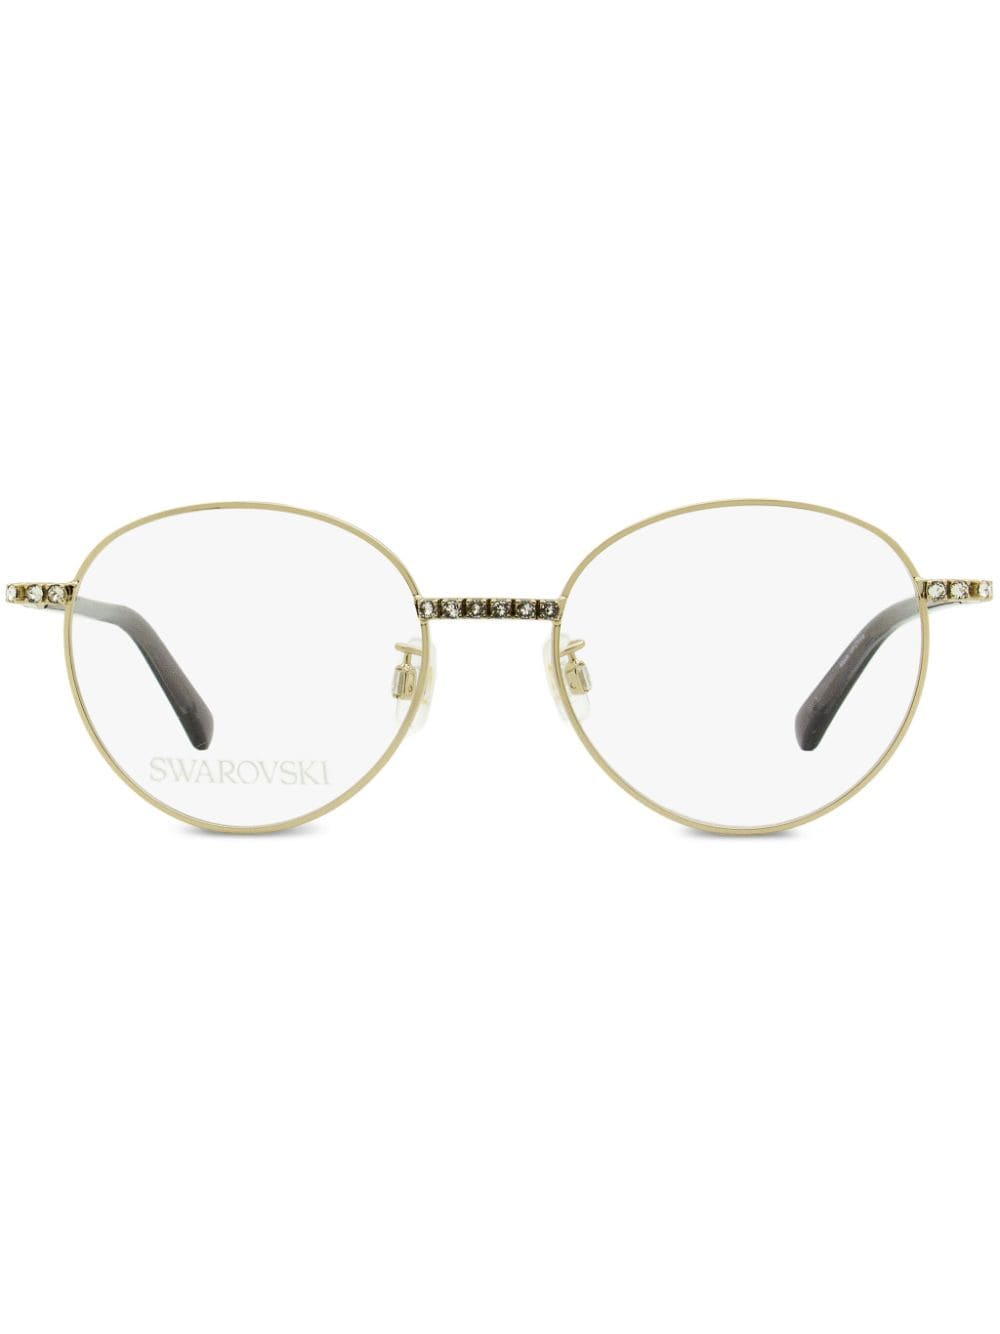 Swarovski 5424 oval-frame crystal glasses - Gold von Swarovski